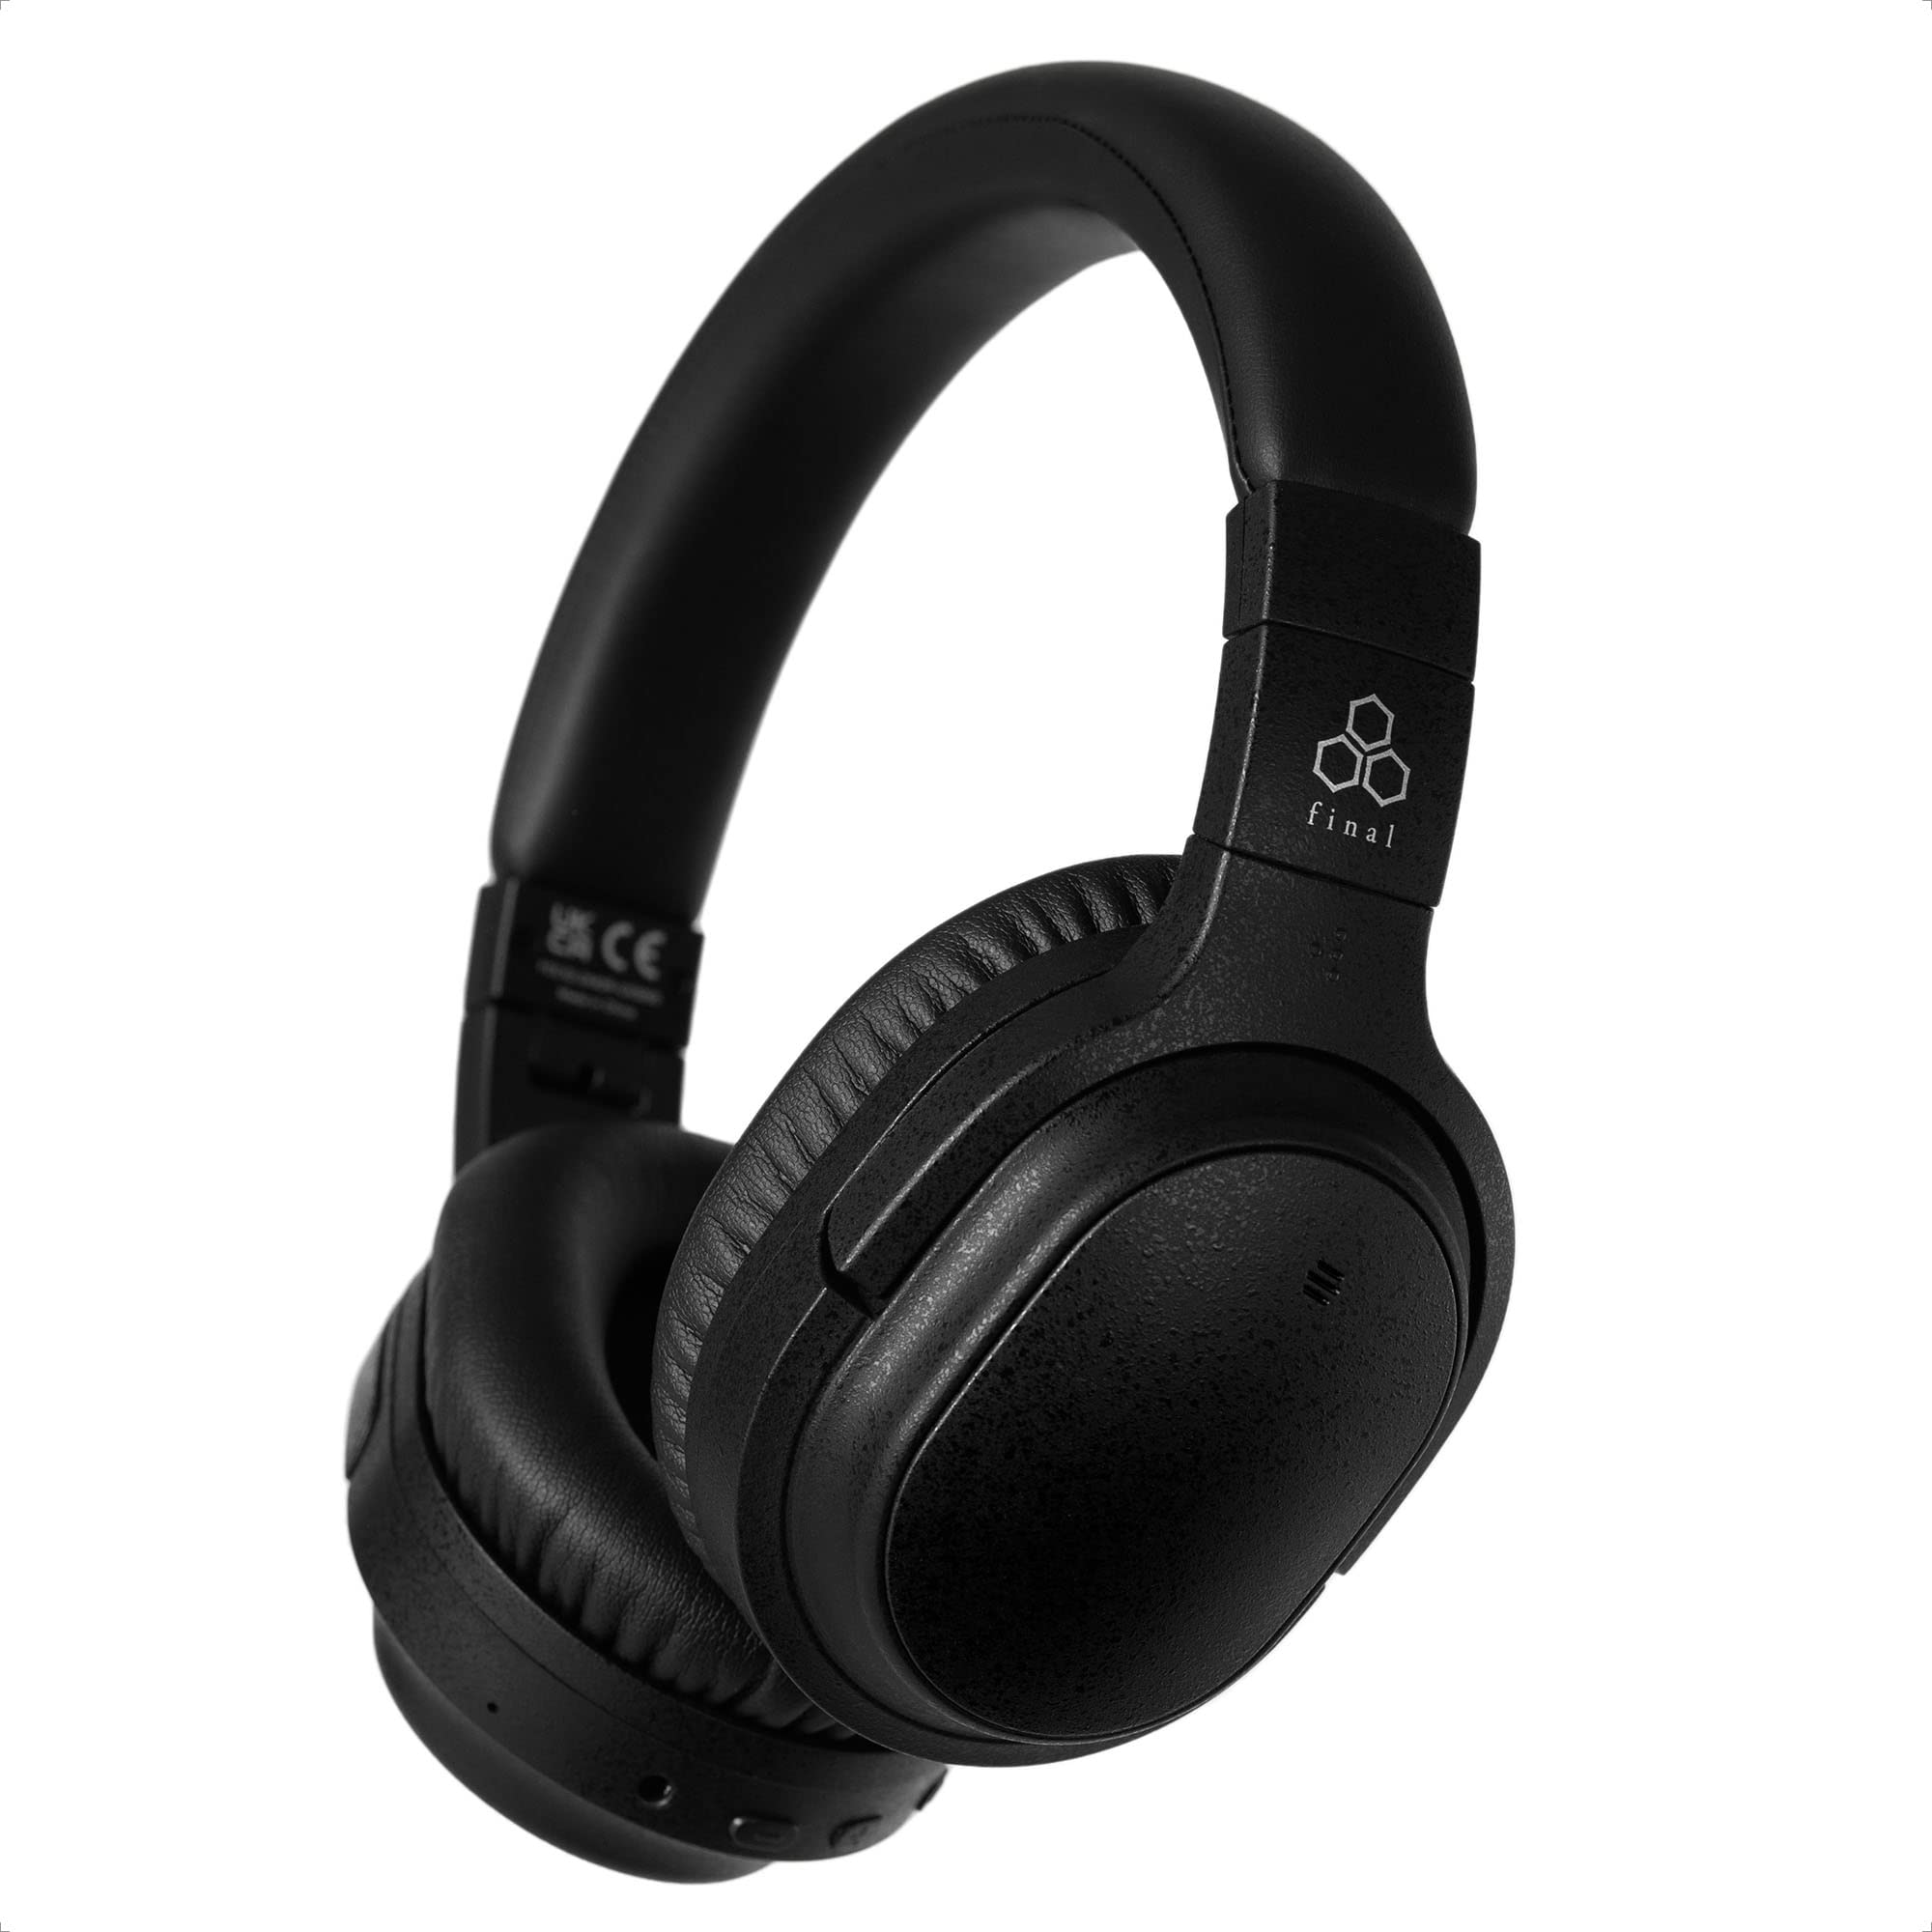 Final Fones de ouvido sem fio UX3000 com cancelamento d...